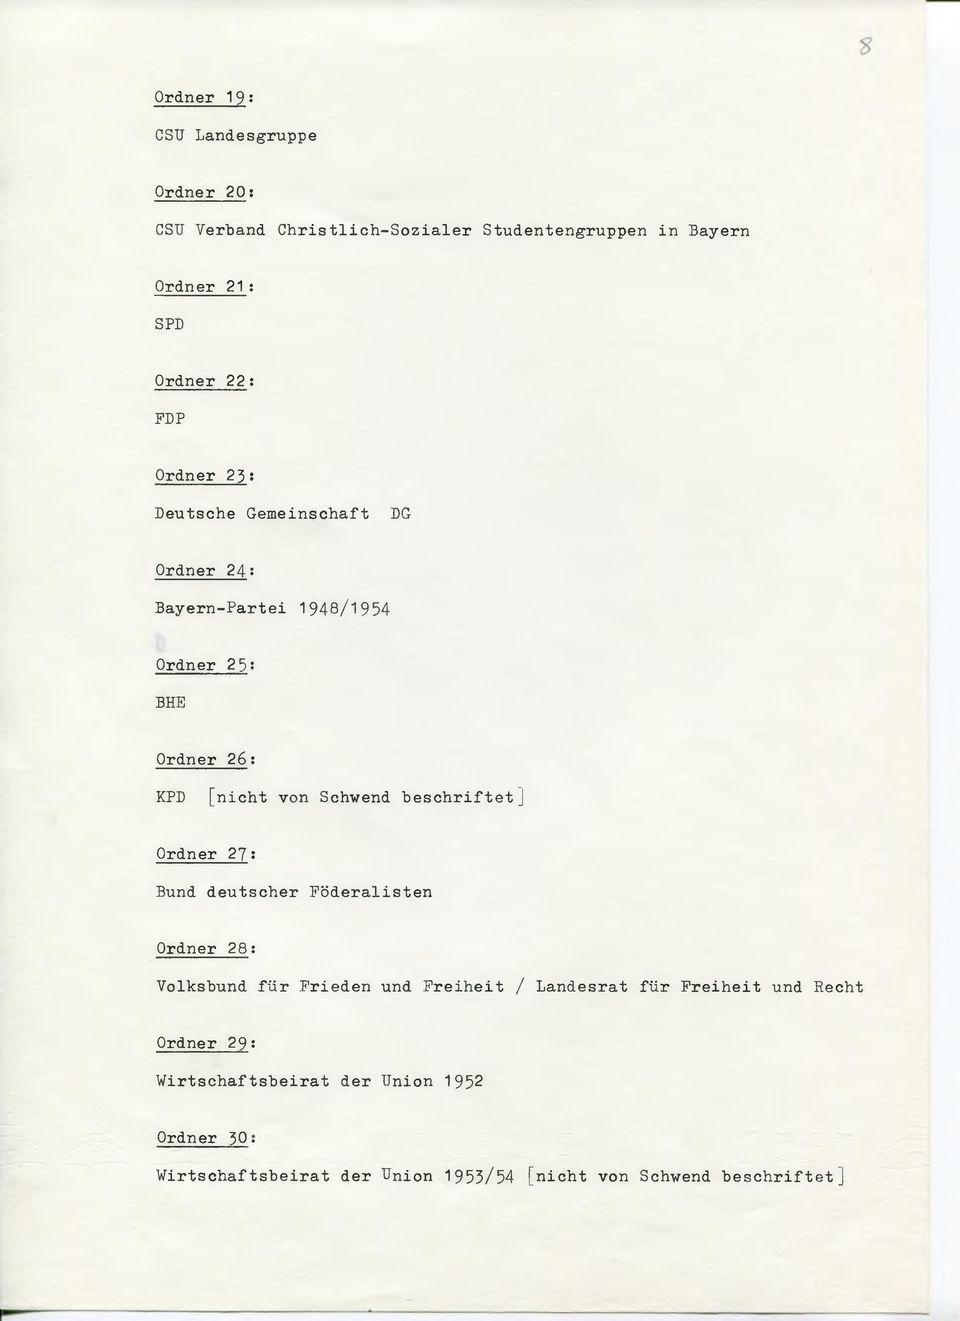 23: Deutsche Gemeinschaft DG Ordner 24: Bayern-Partei 1948/1954 Ordner 25?